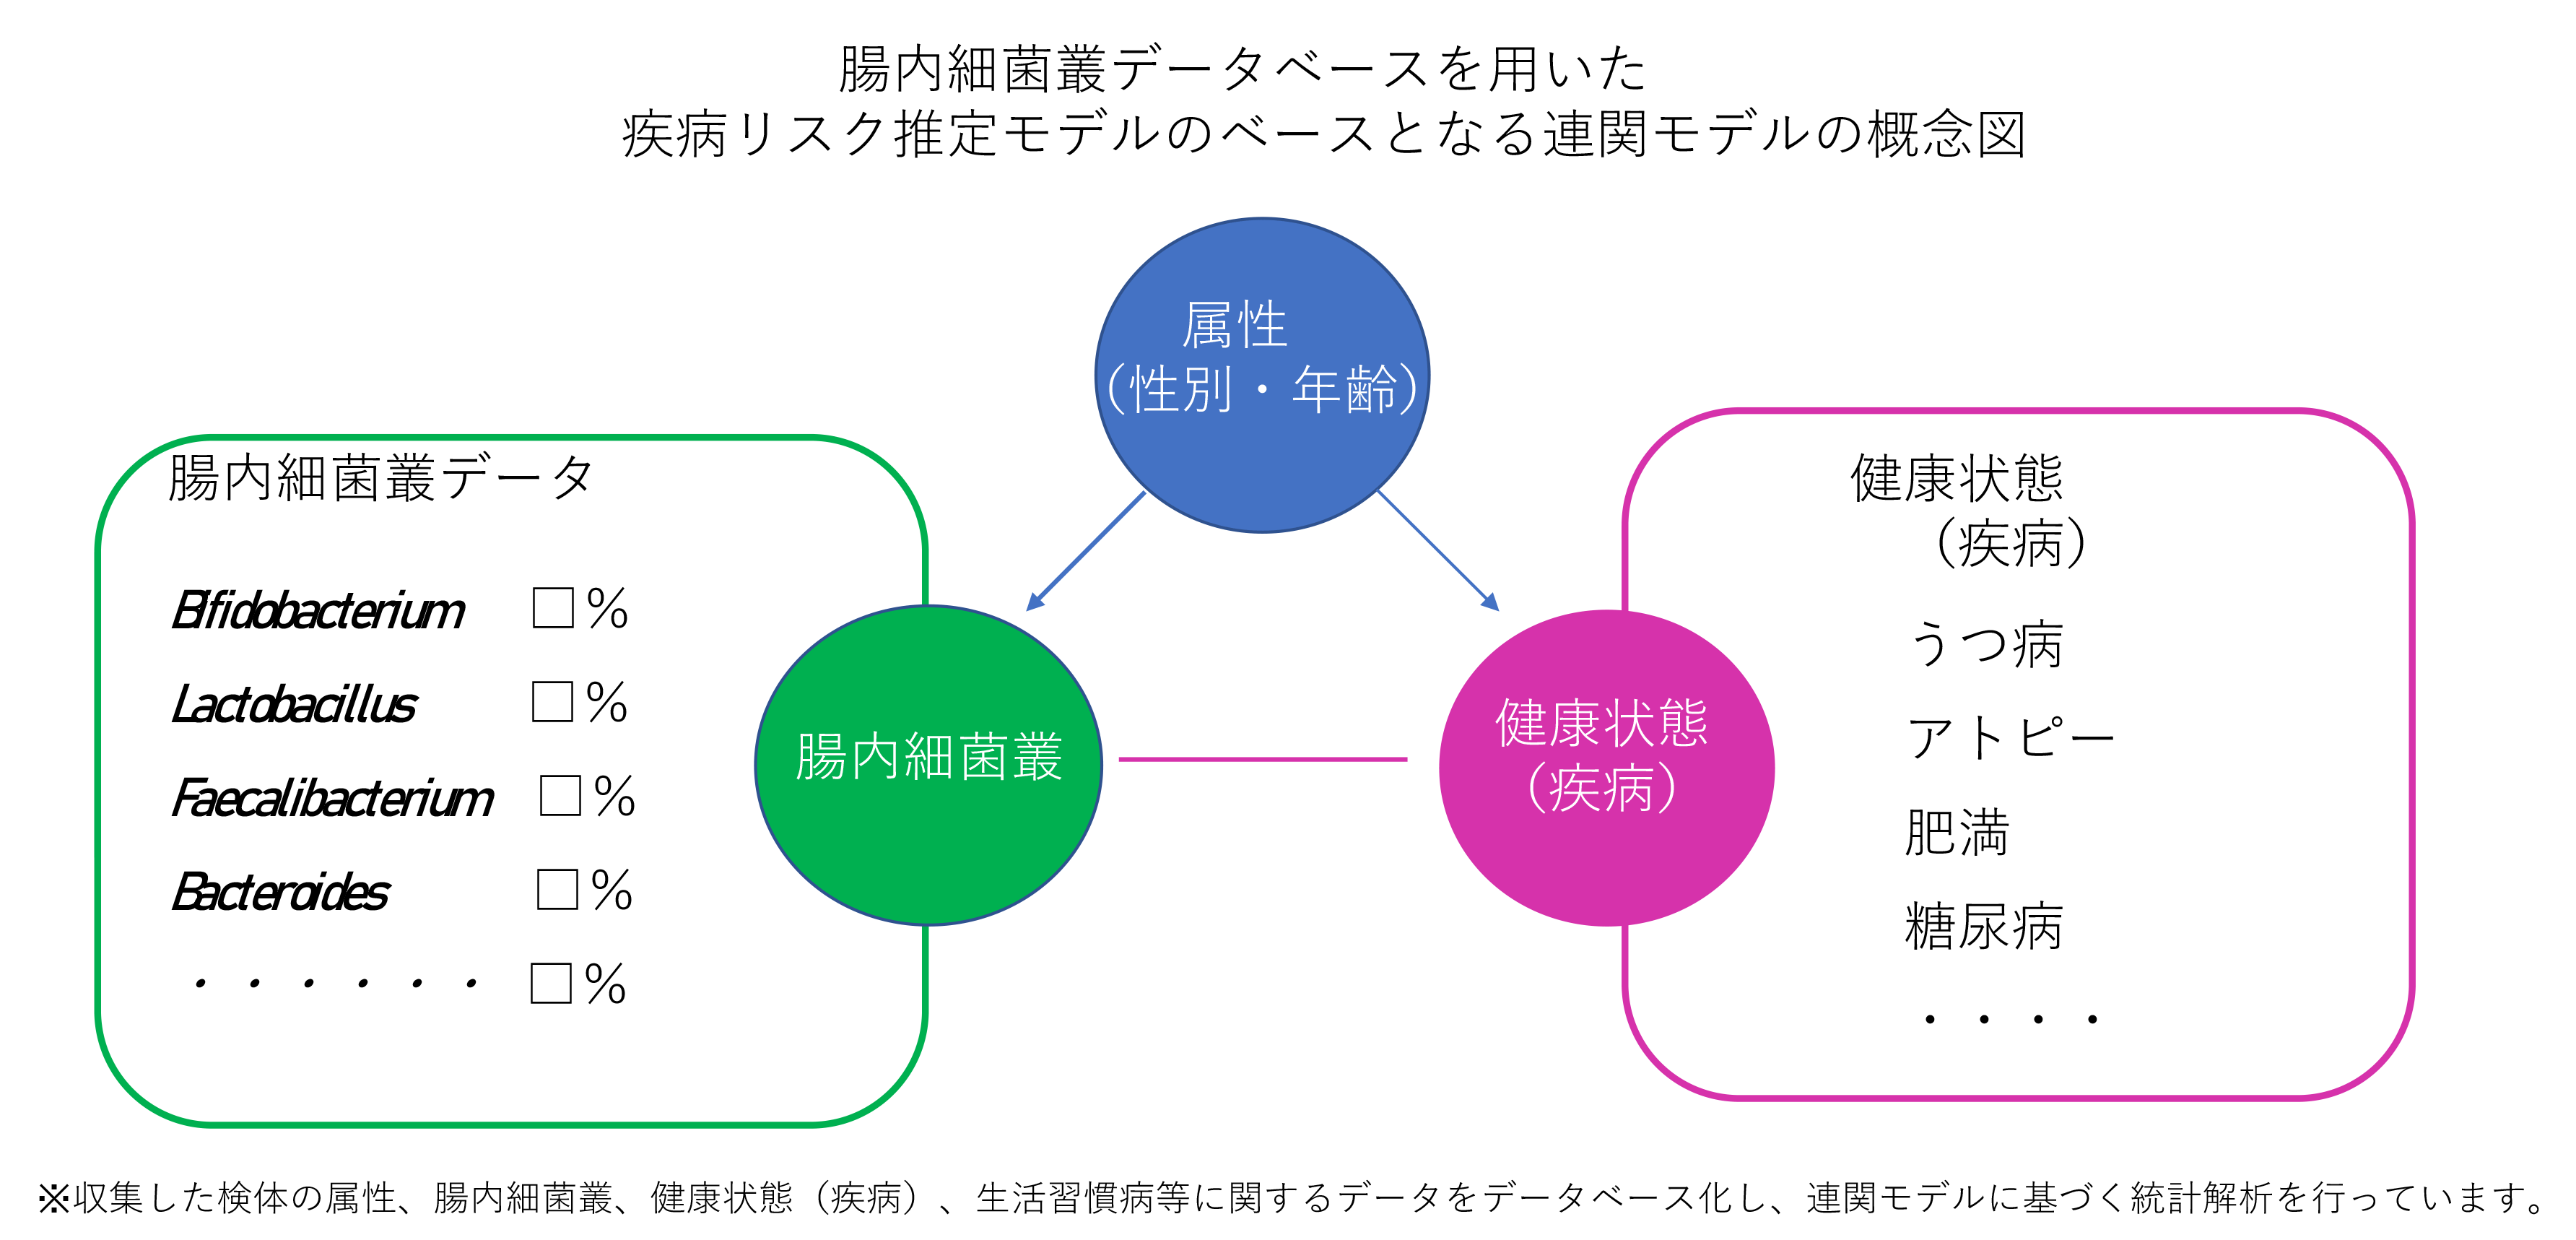 モデル概念図